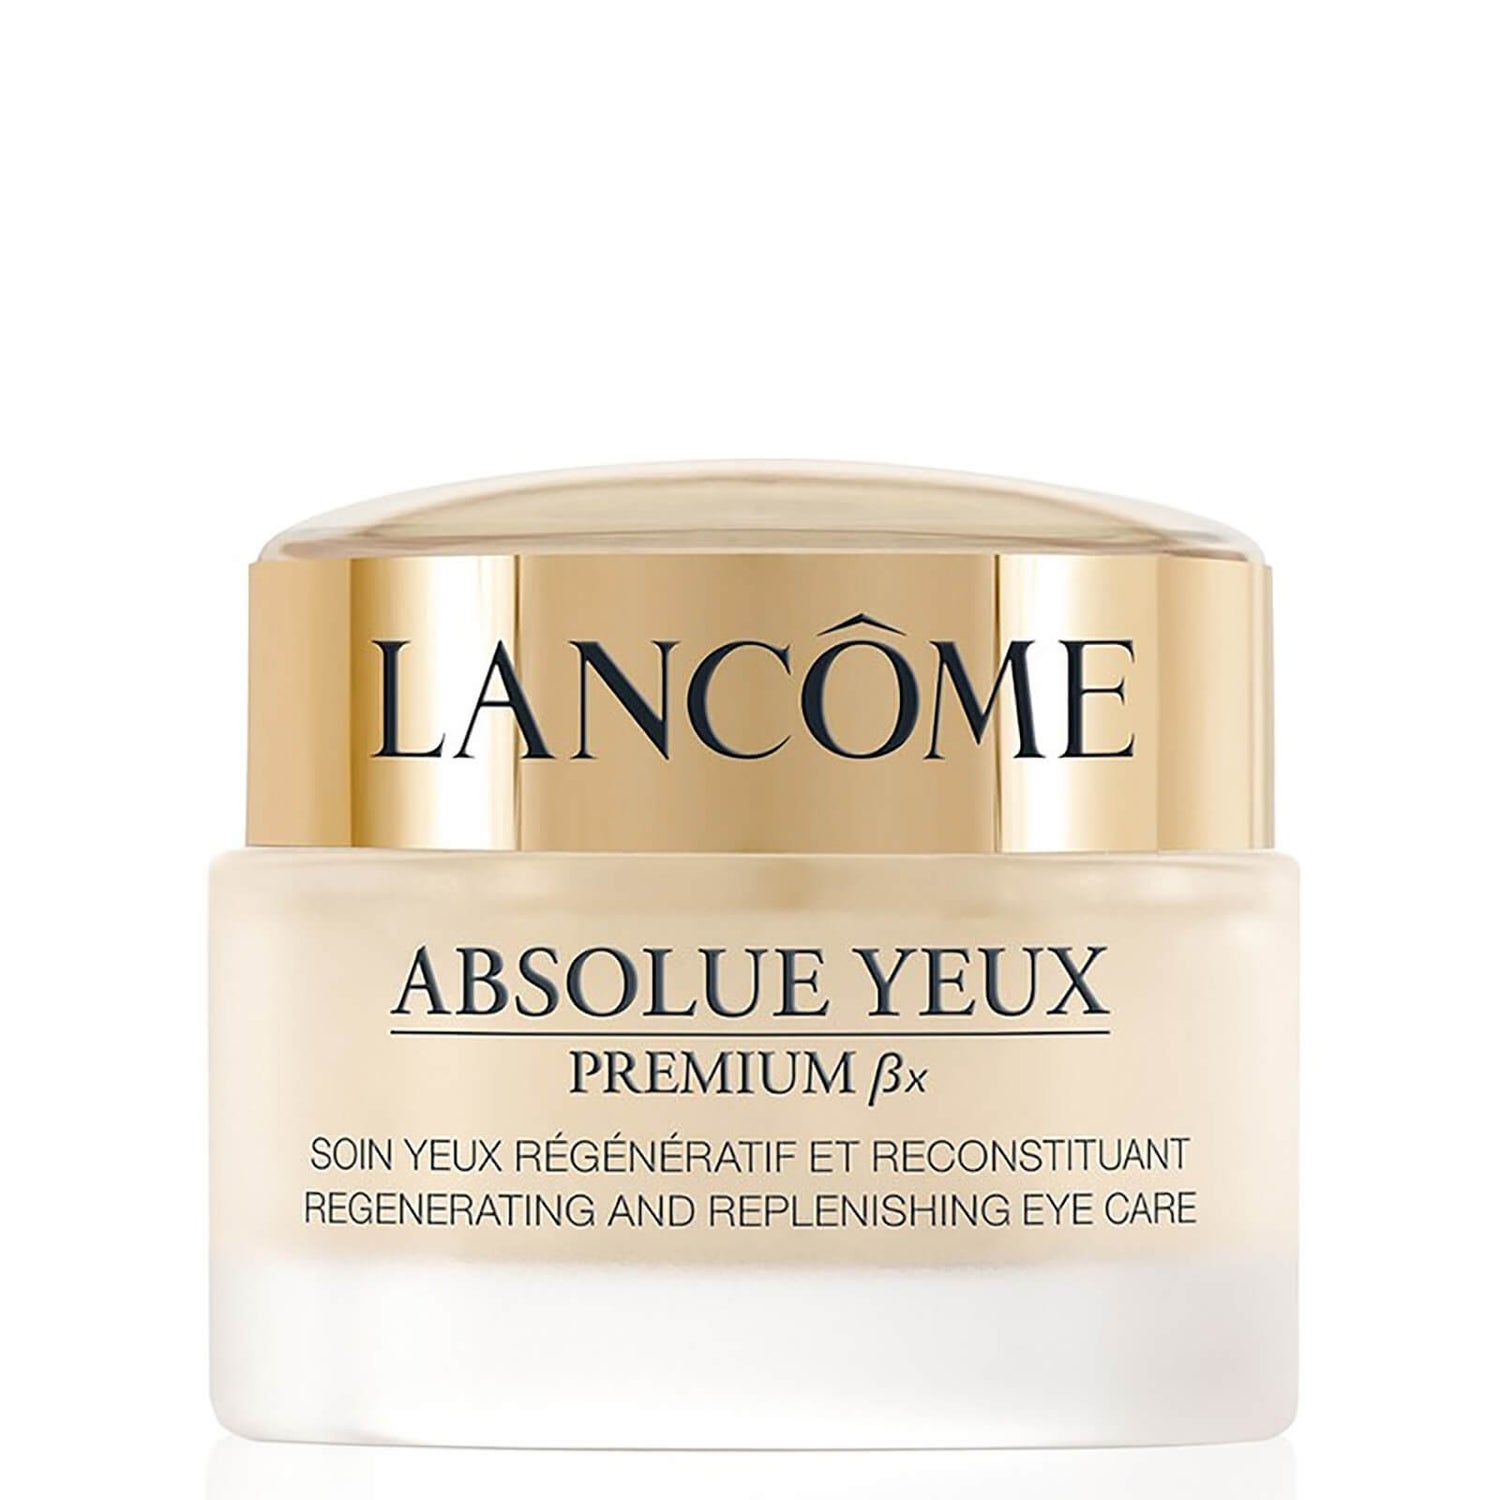 Lancôme Absolue Yeux Premium BX Augencreme 20ml